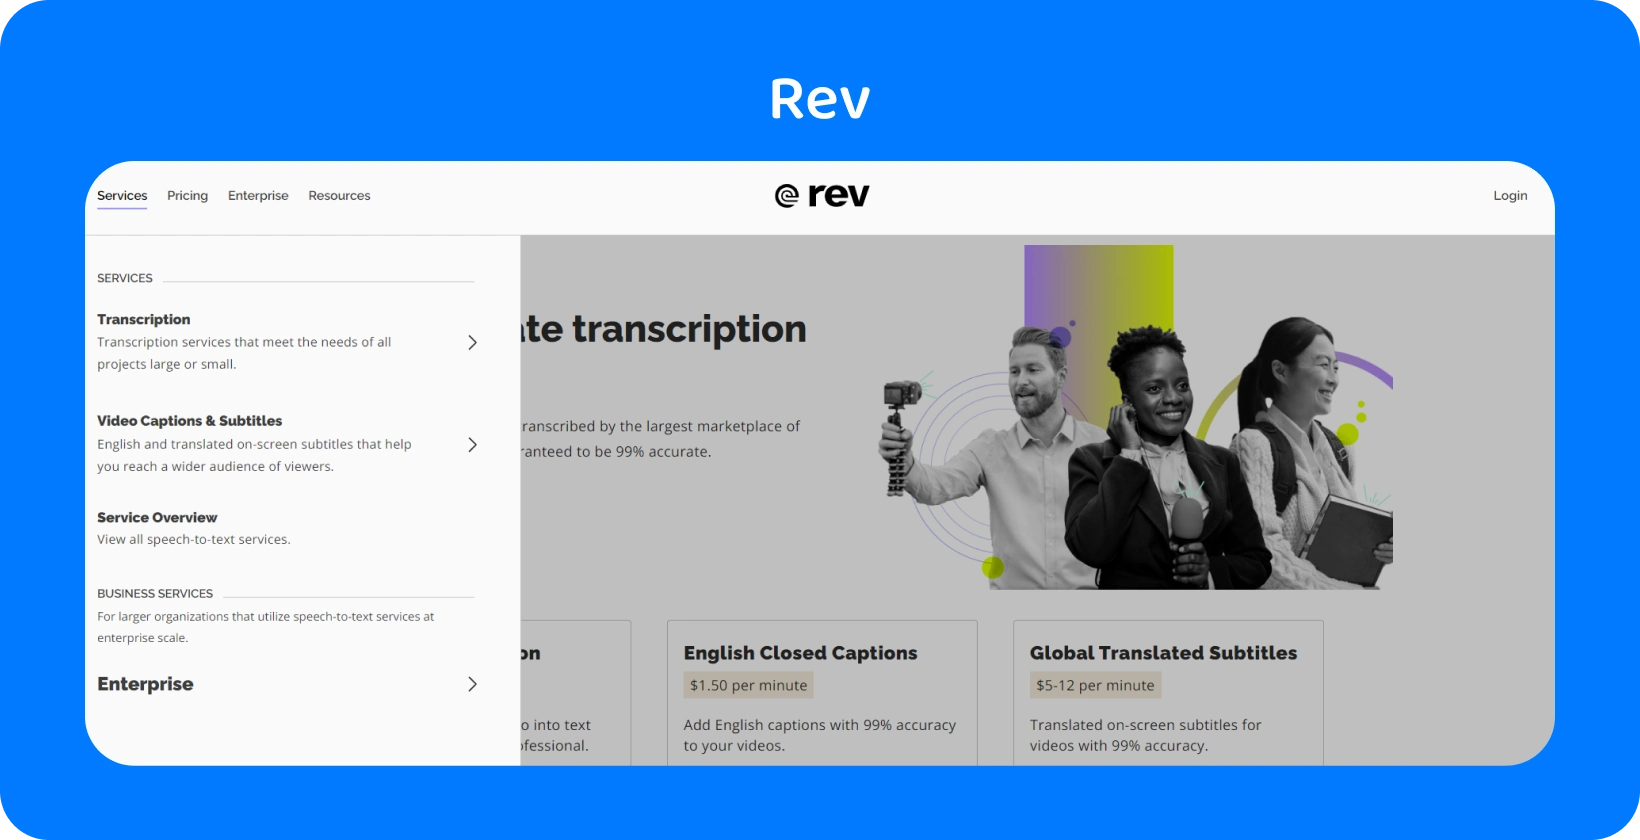 Trang chủ của Rev giới thiệu các dịch vụ phiên âm để chuyển đổi nhanh chóng, chính xác âm thanh thành văn bản cho các chuyên gia.